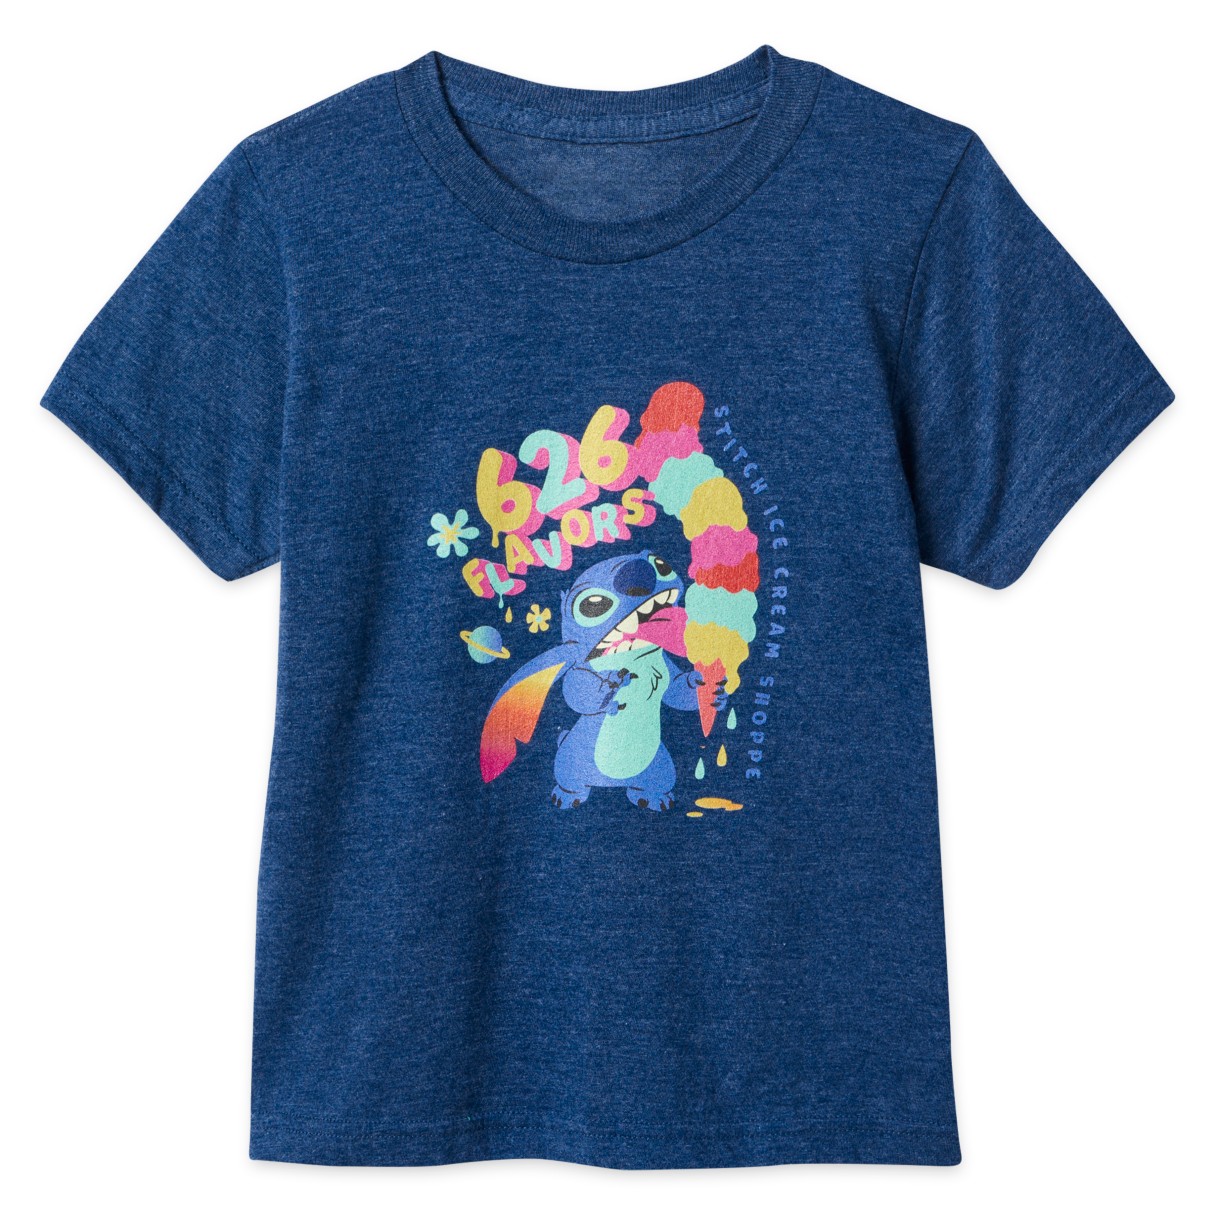 Stitch ''626 Flavors'' T-Shirt for Kids – Lilo & Stitch